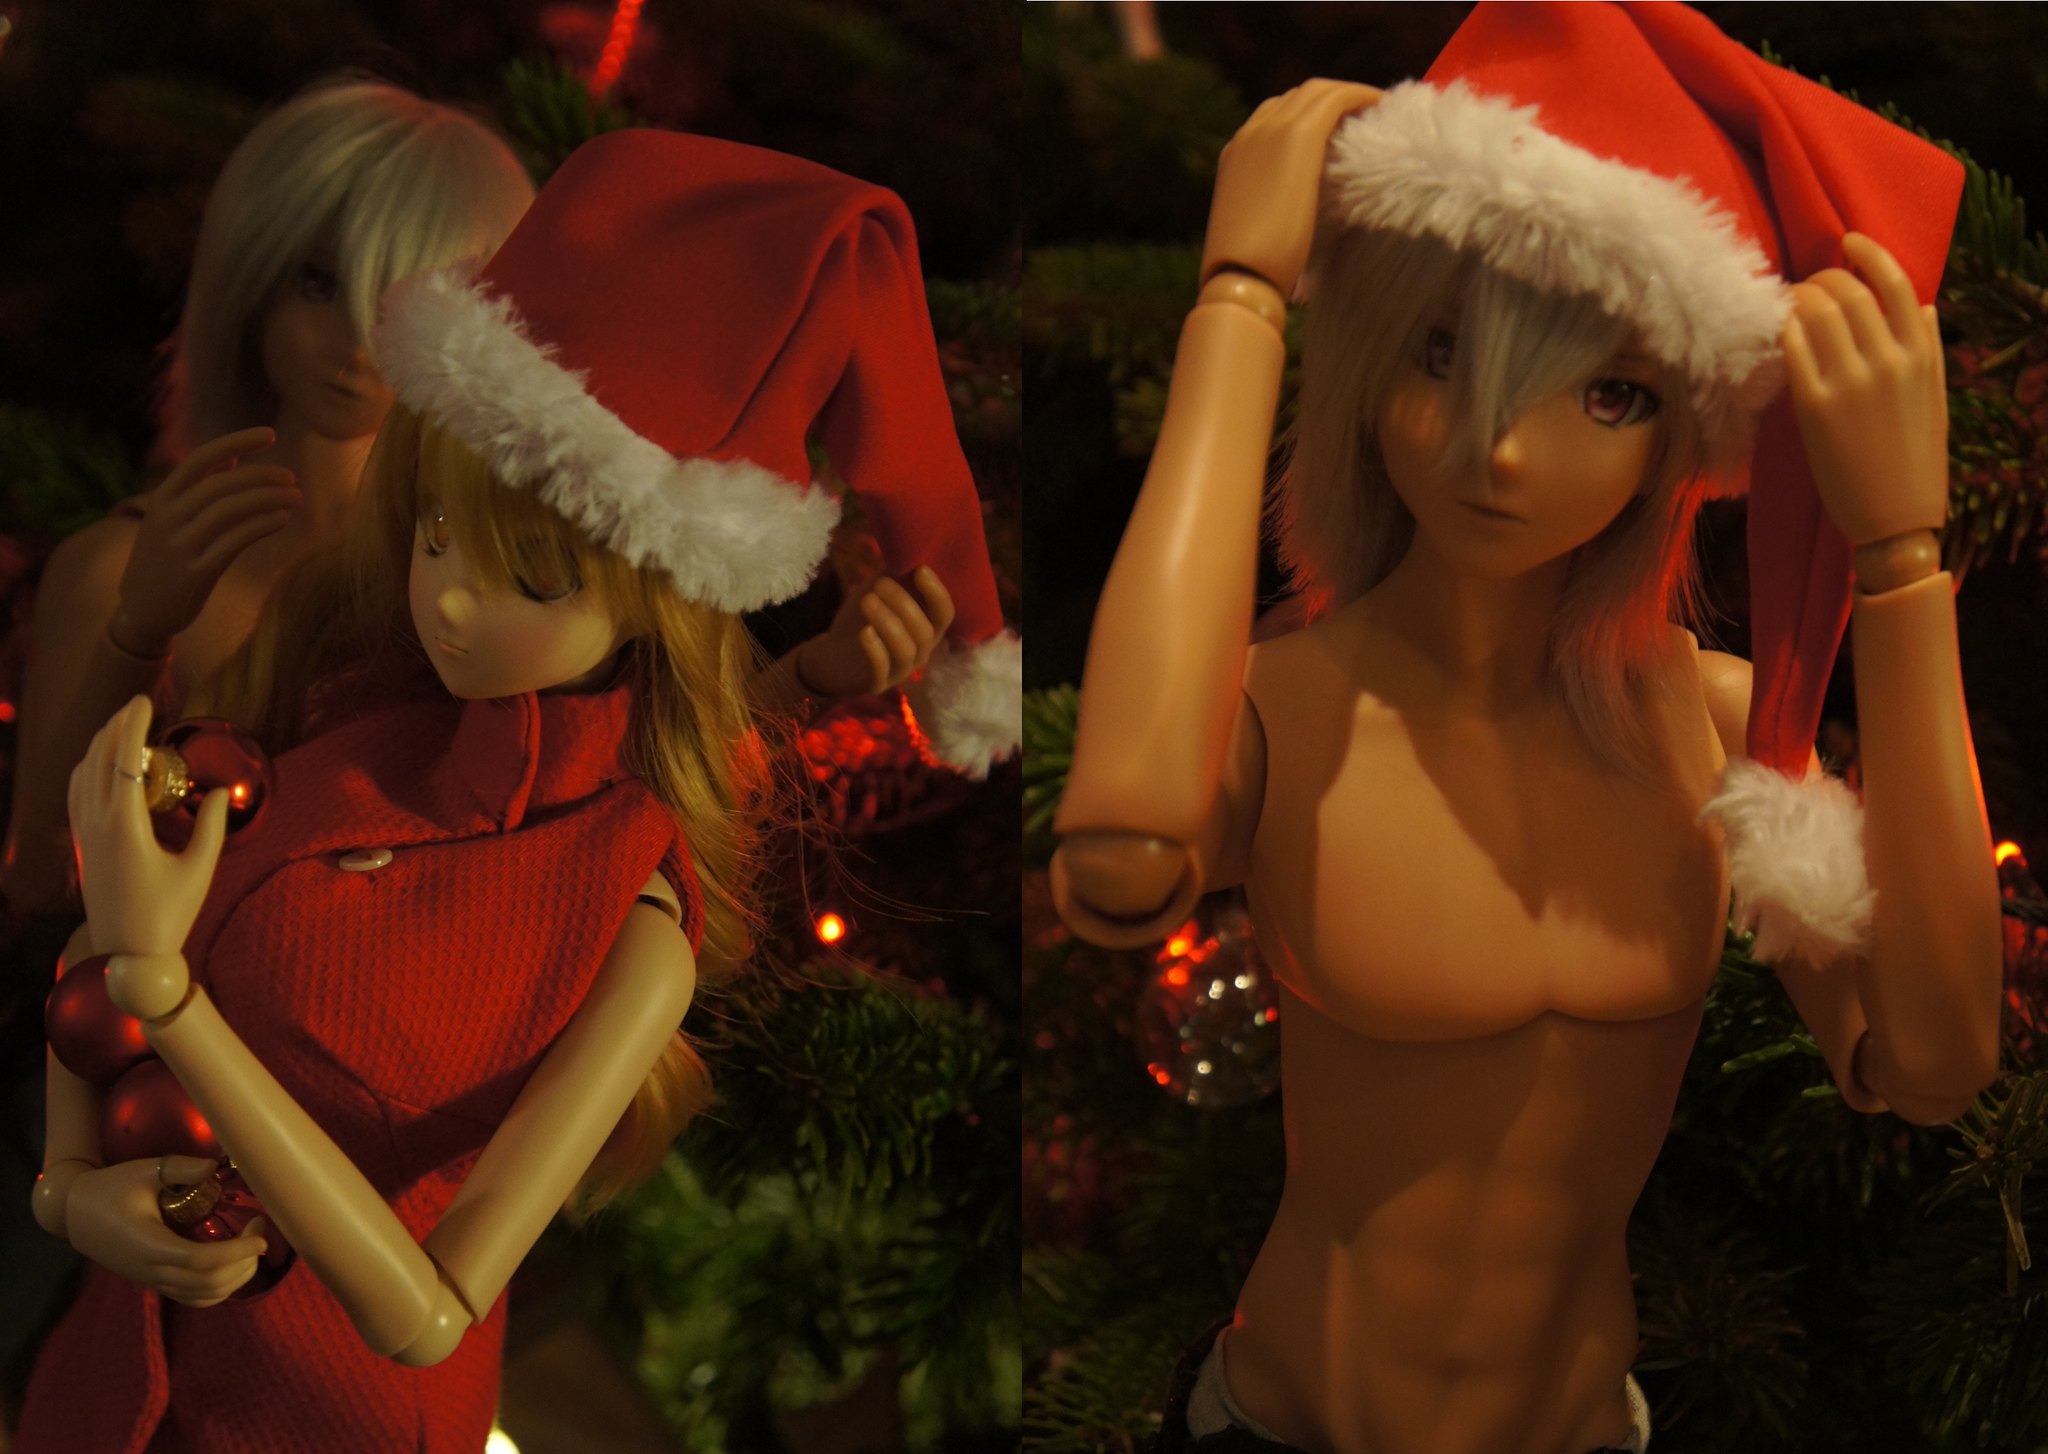 [smart doll - Kizuna et Crimson] photos de groupe, Noël est là! 31520028050_e5f7e759d3_k